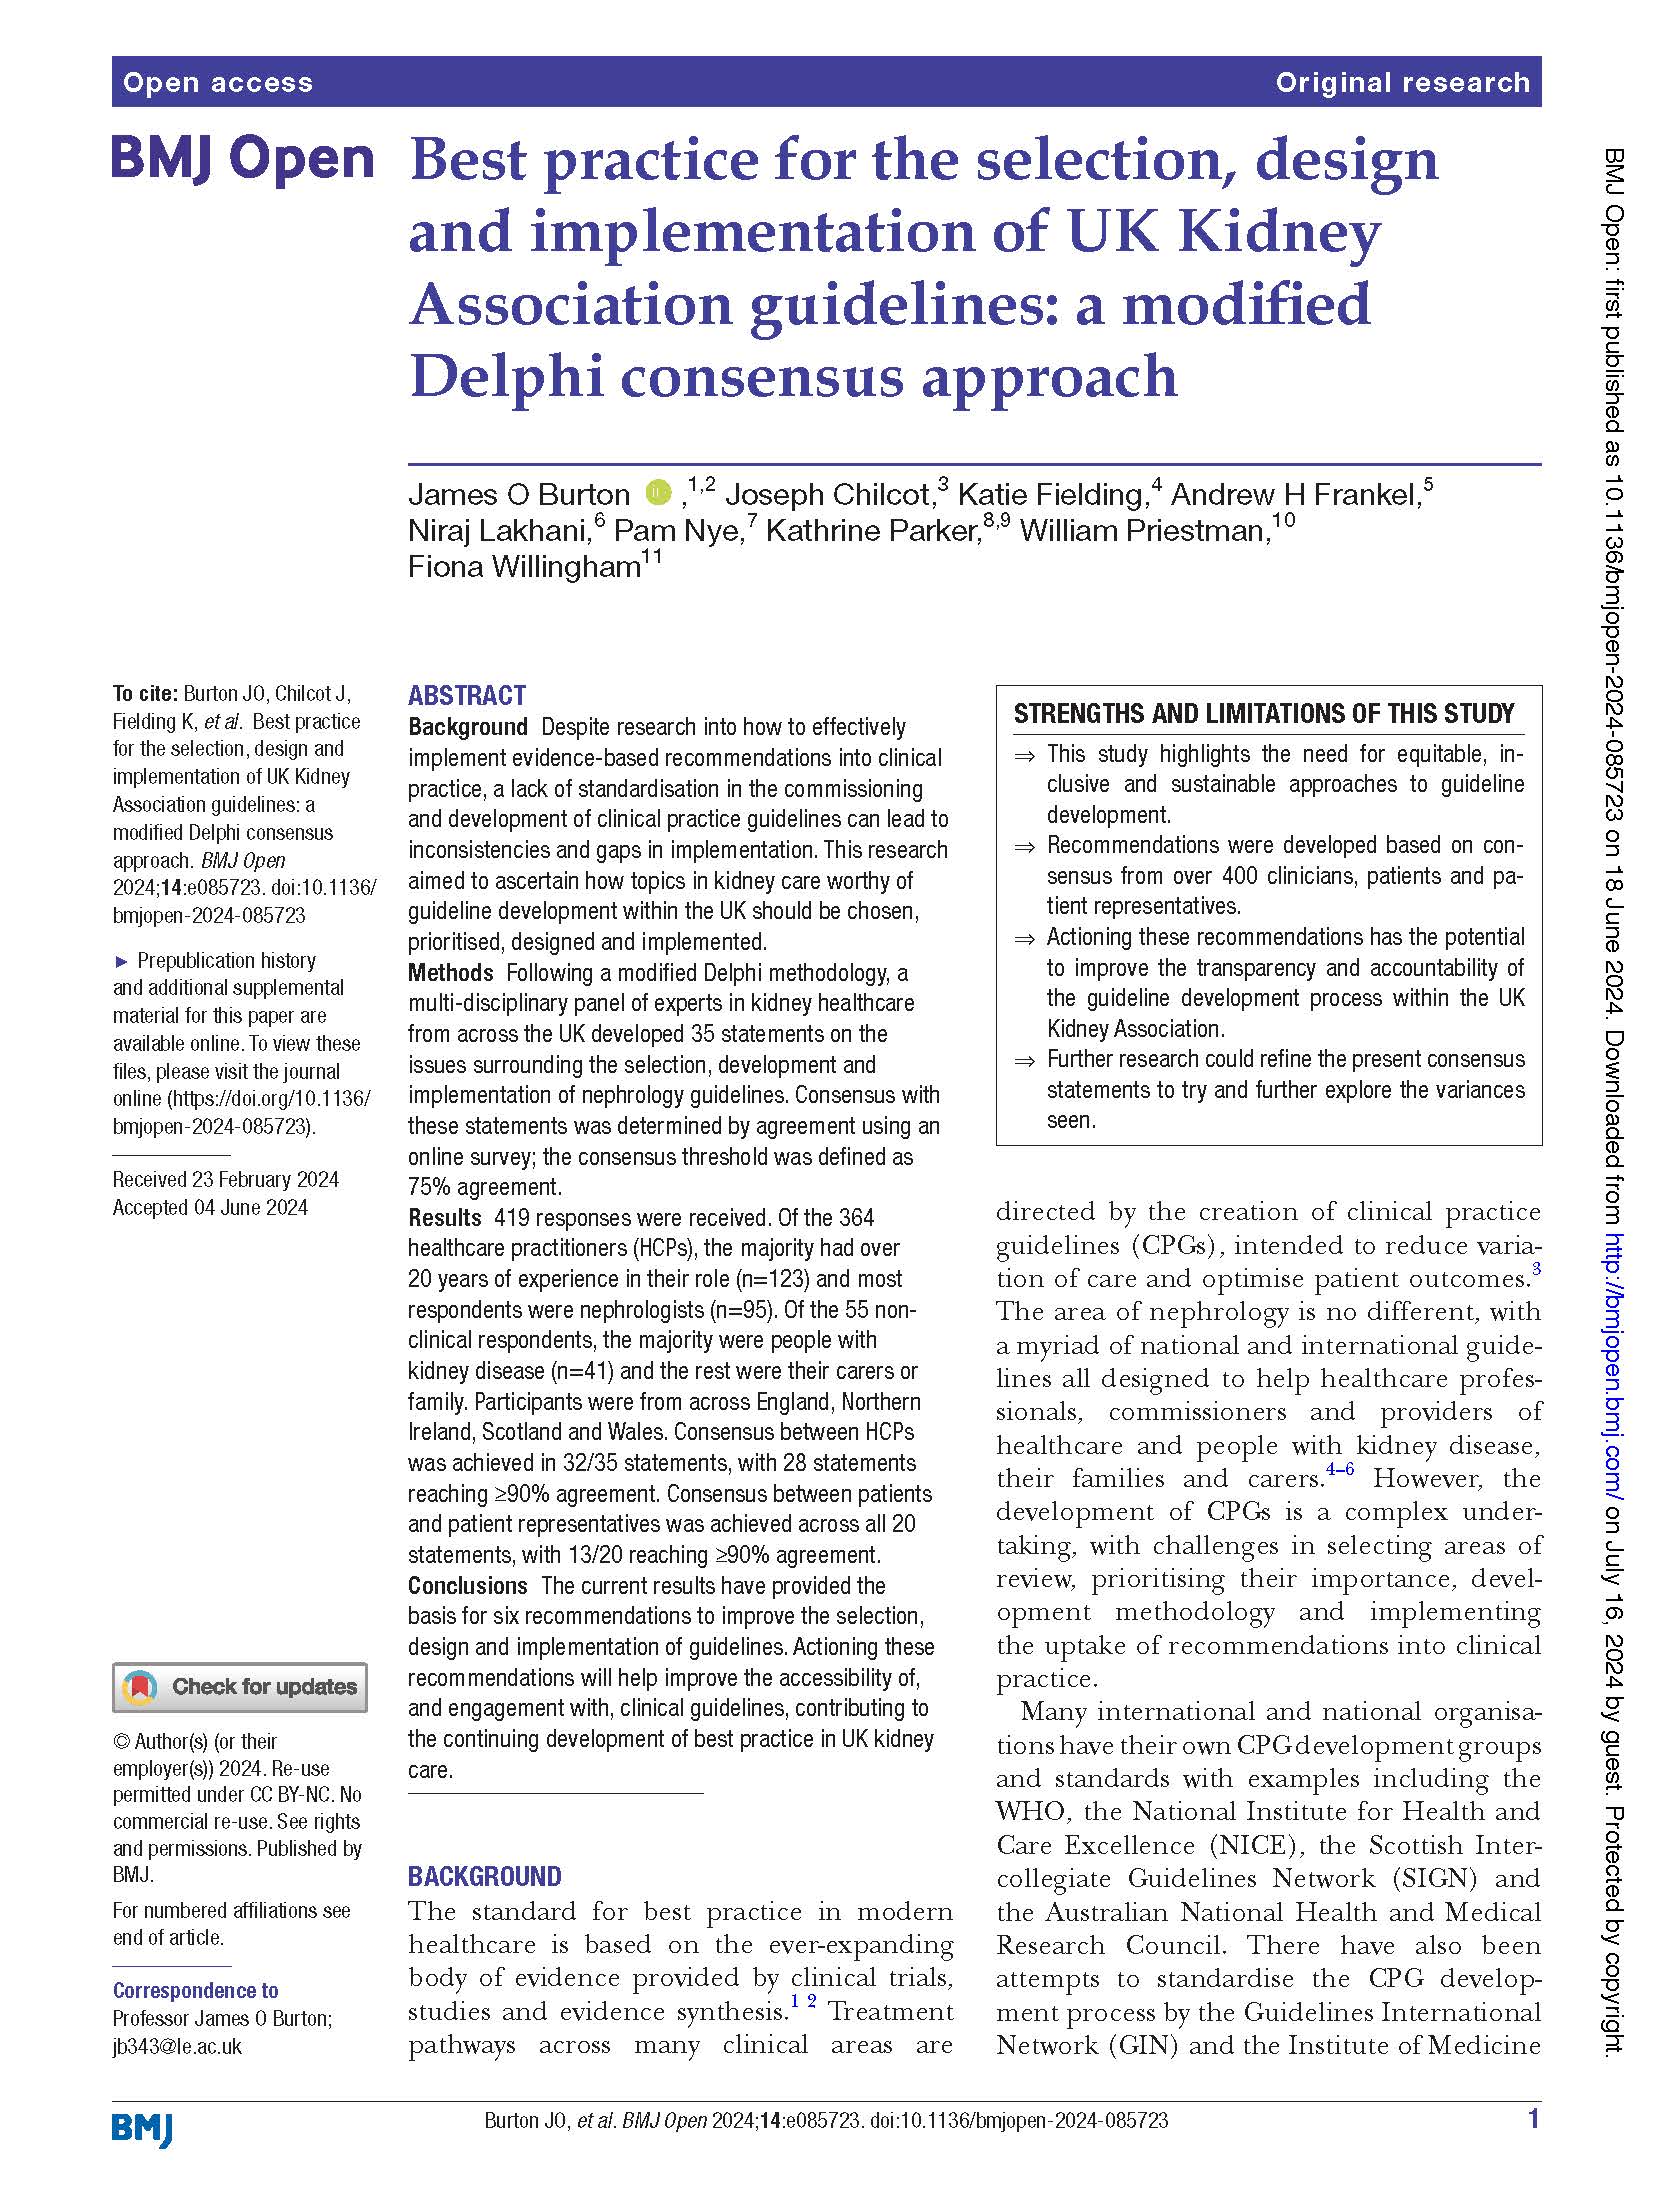 Delphi method UK Kidney Guidelines 